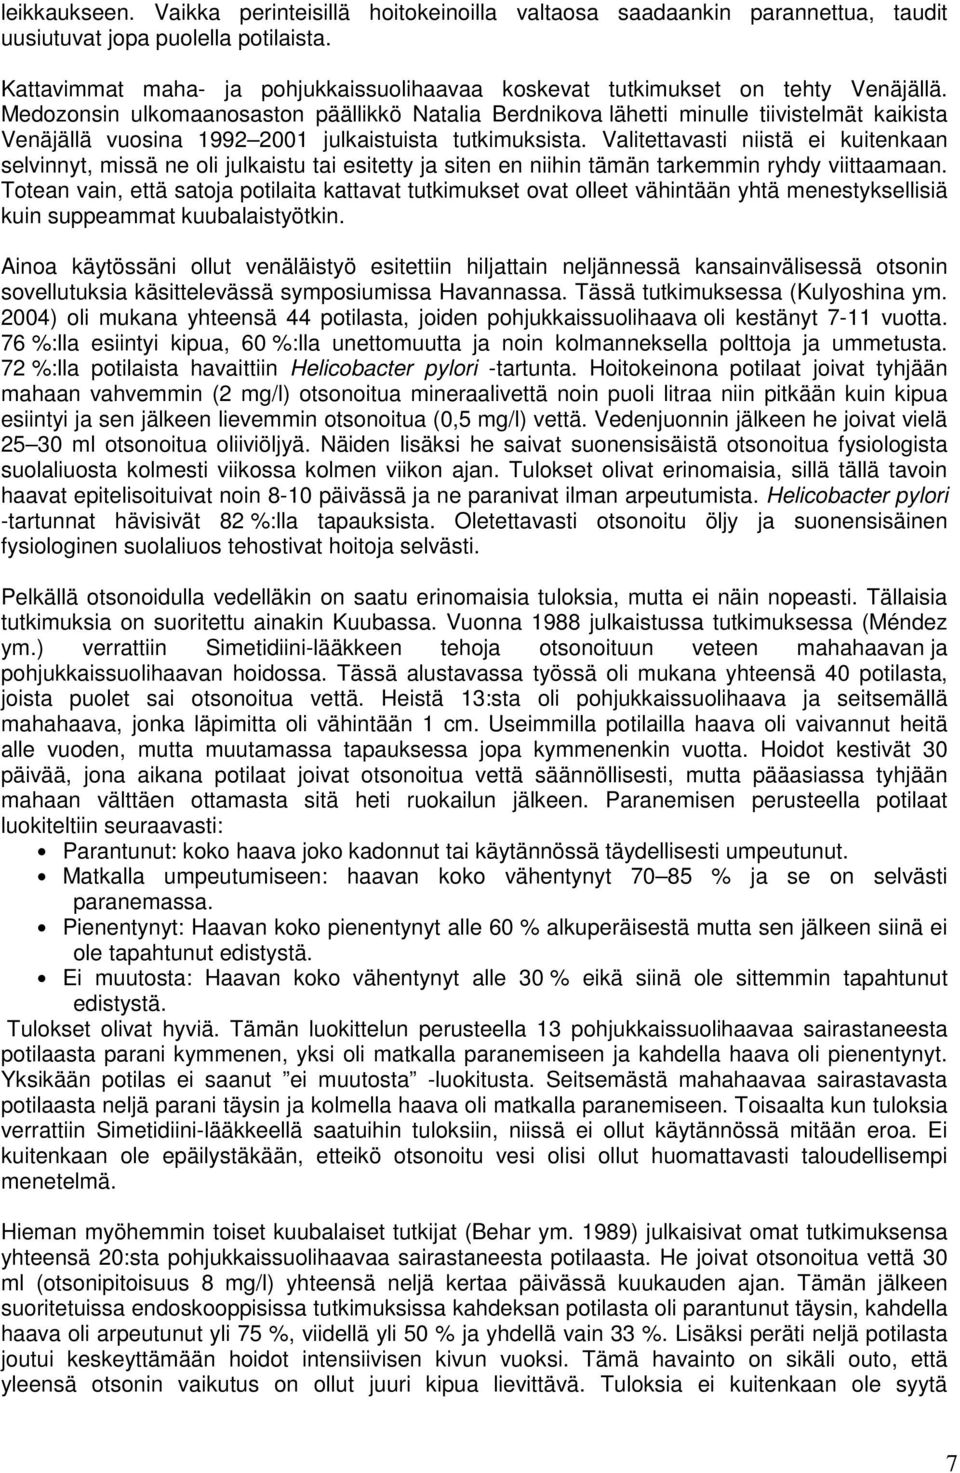 Medozonsin ulkomaanosaston päällikkö Natalia Berdnikova lähetti minulle tiivistelmät kaikista Venäjällä vuosina 1992 2001 julkaistuista tutkimuksista.